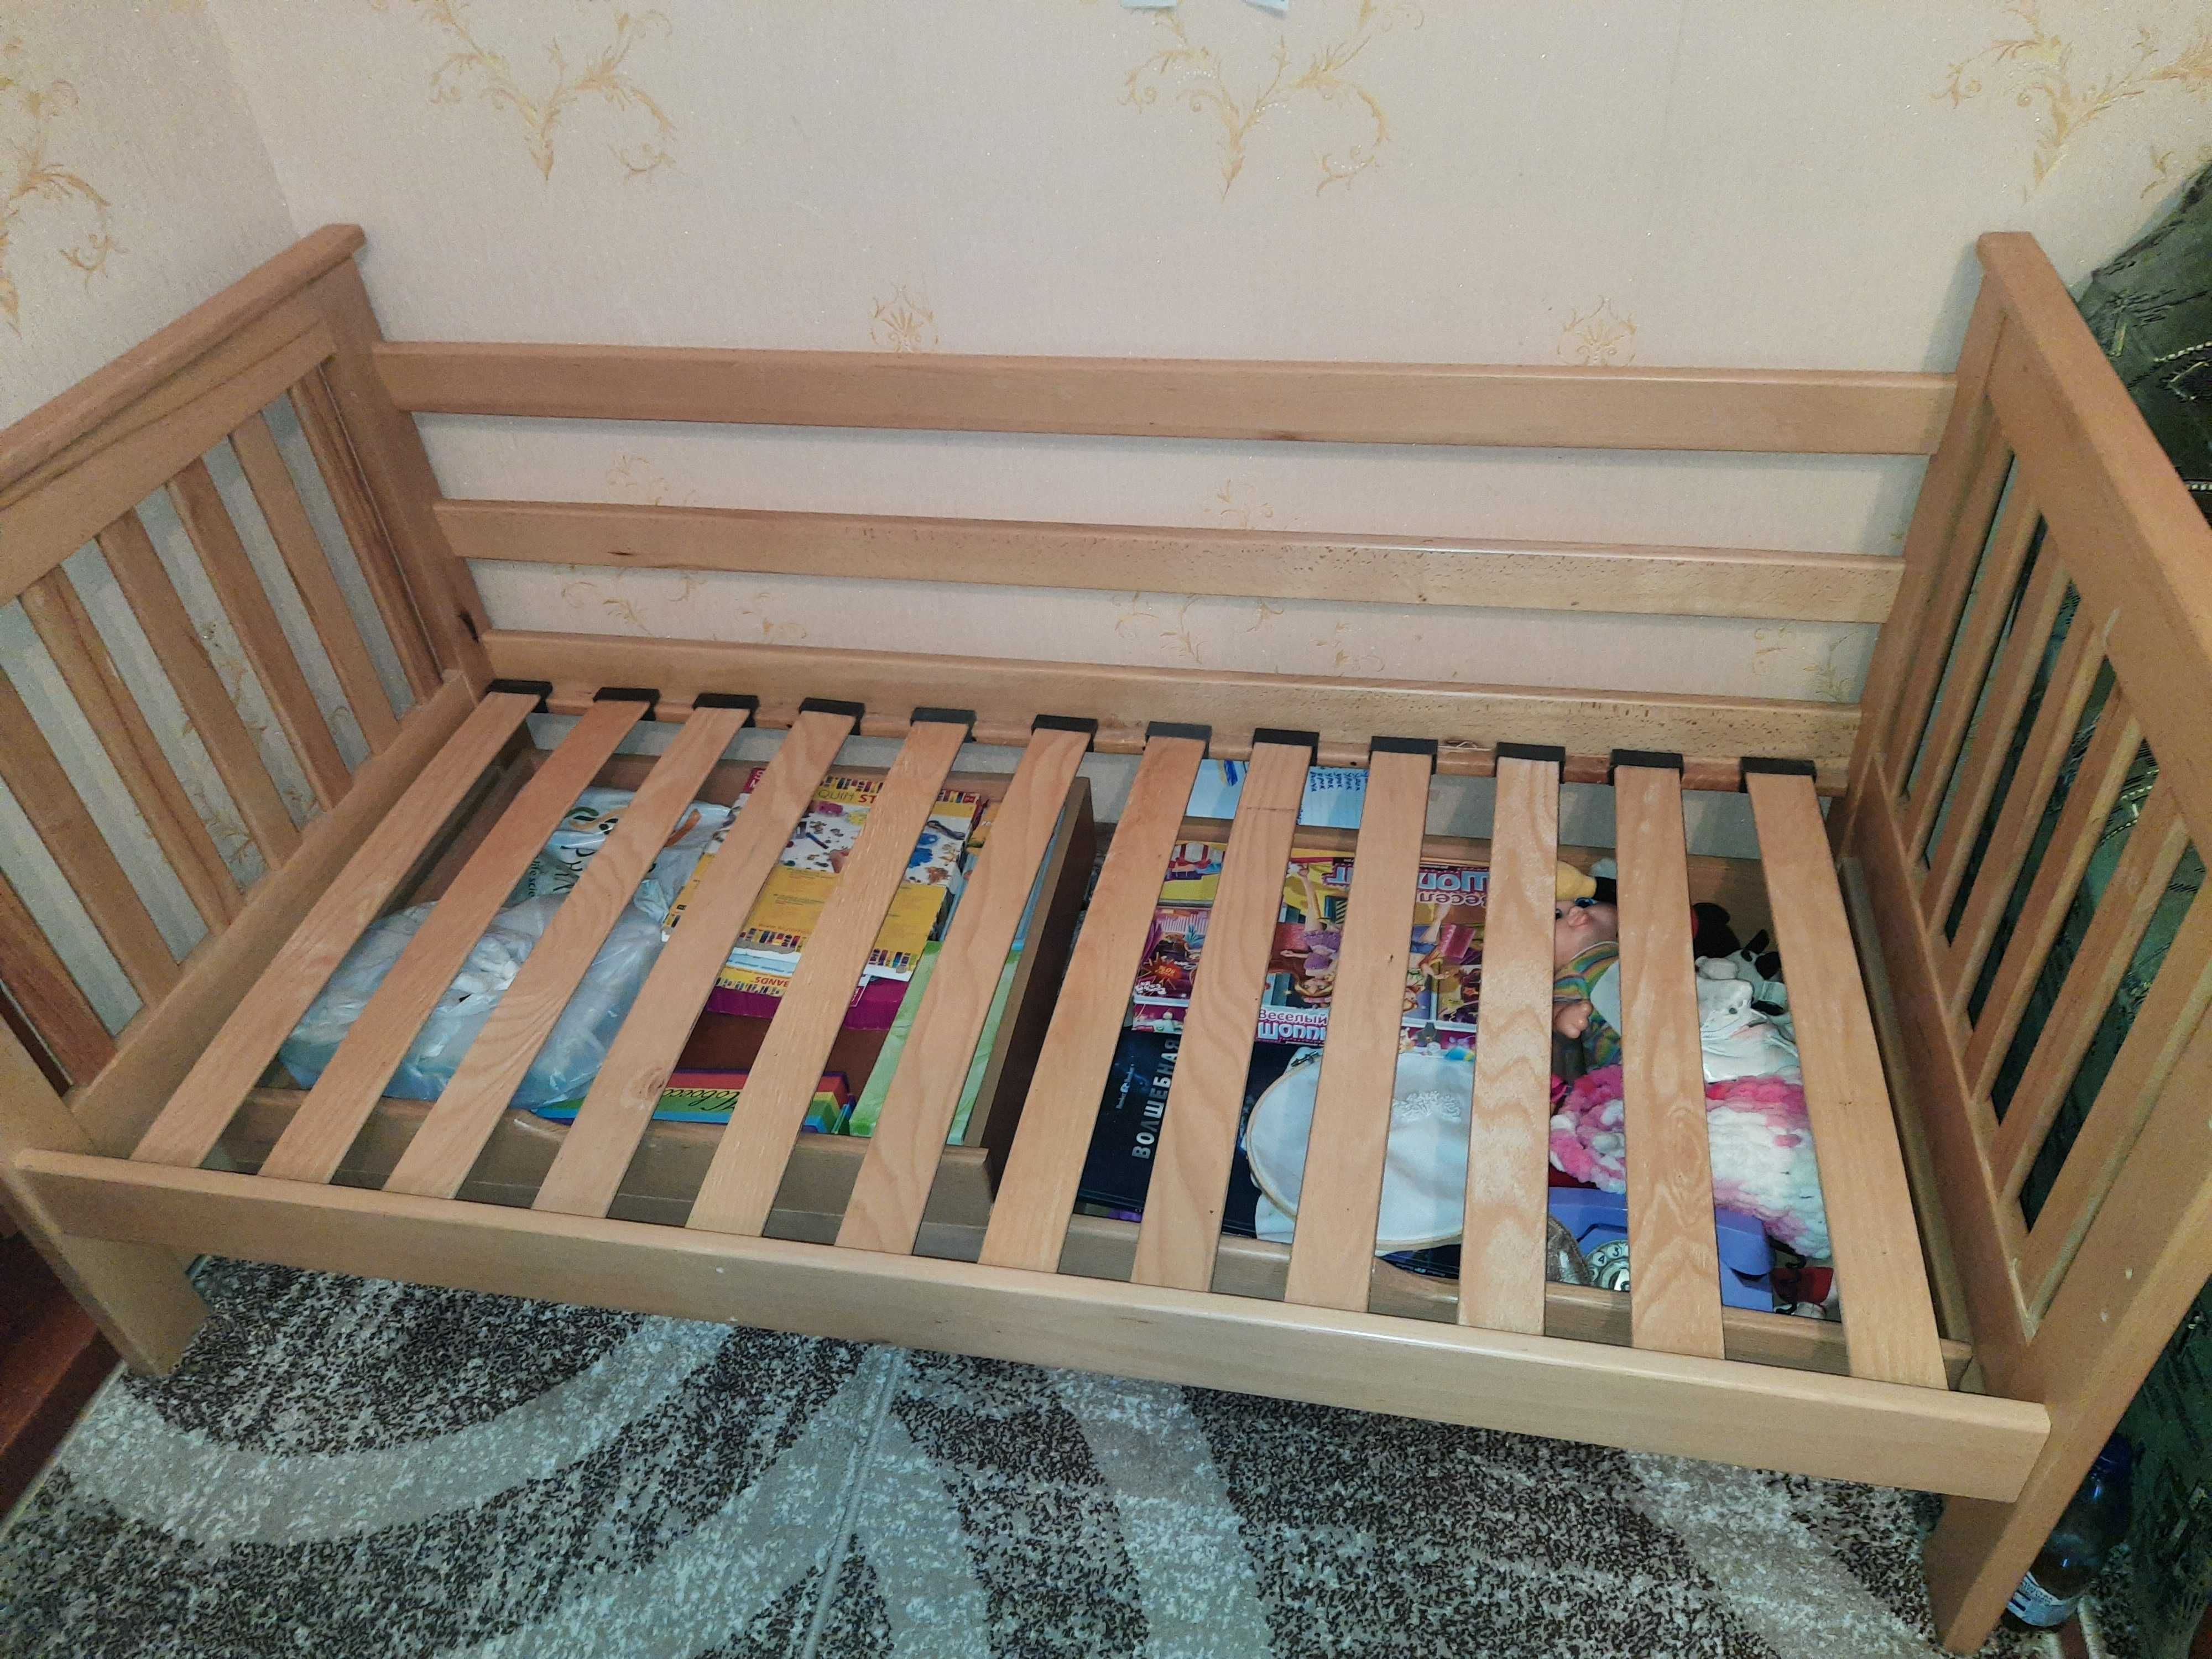 Дитяче ліжко з натуральной деревини (БУК) з матрацем 160/80/20.